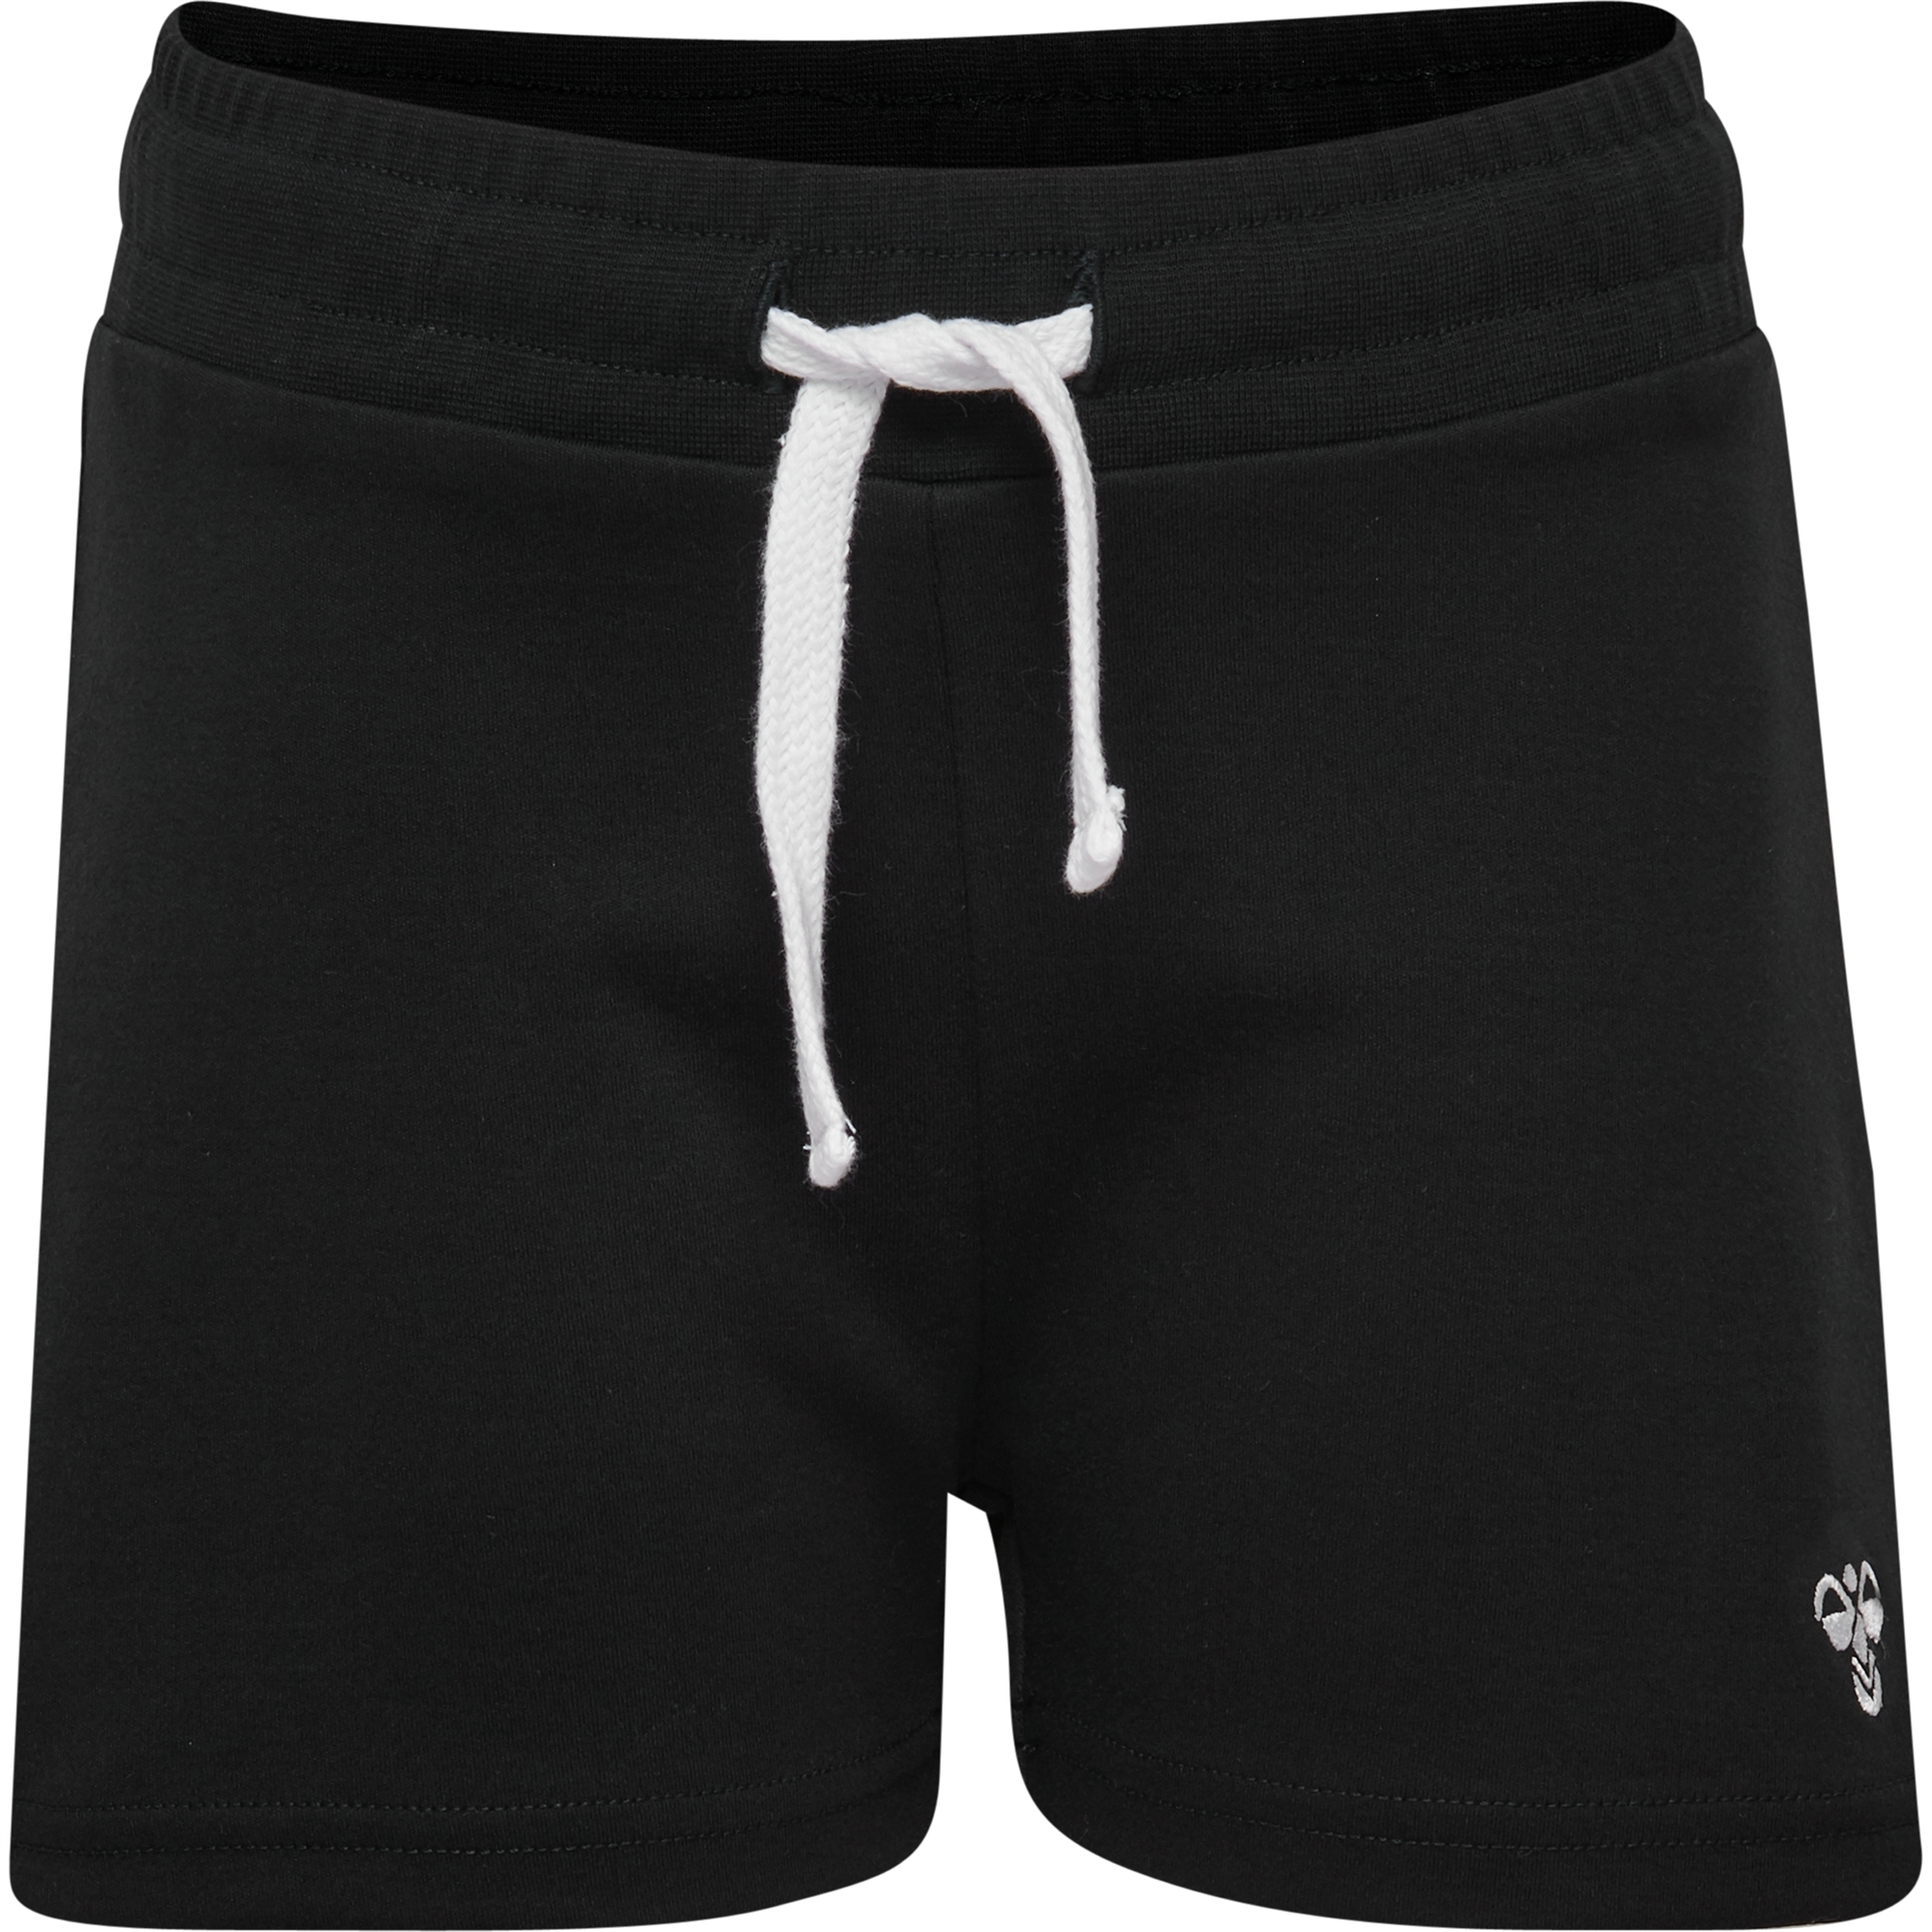 Assassin passage Pind Køb Hummel Nille Shorts shorts til børn i sort